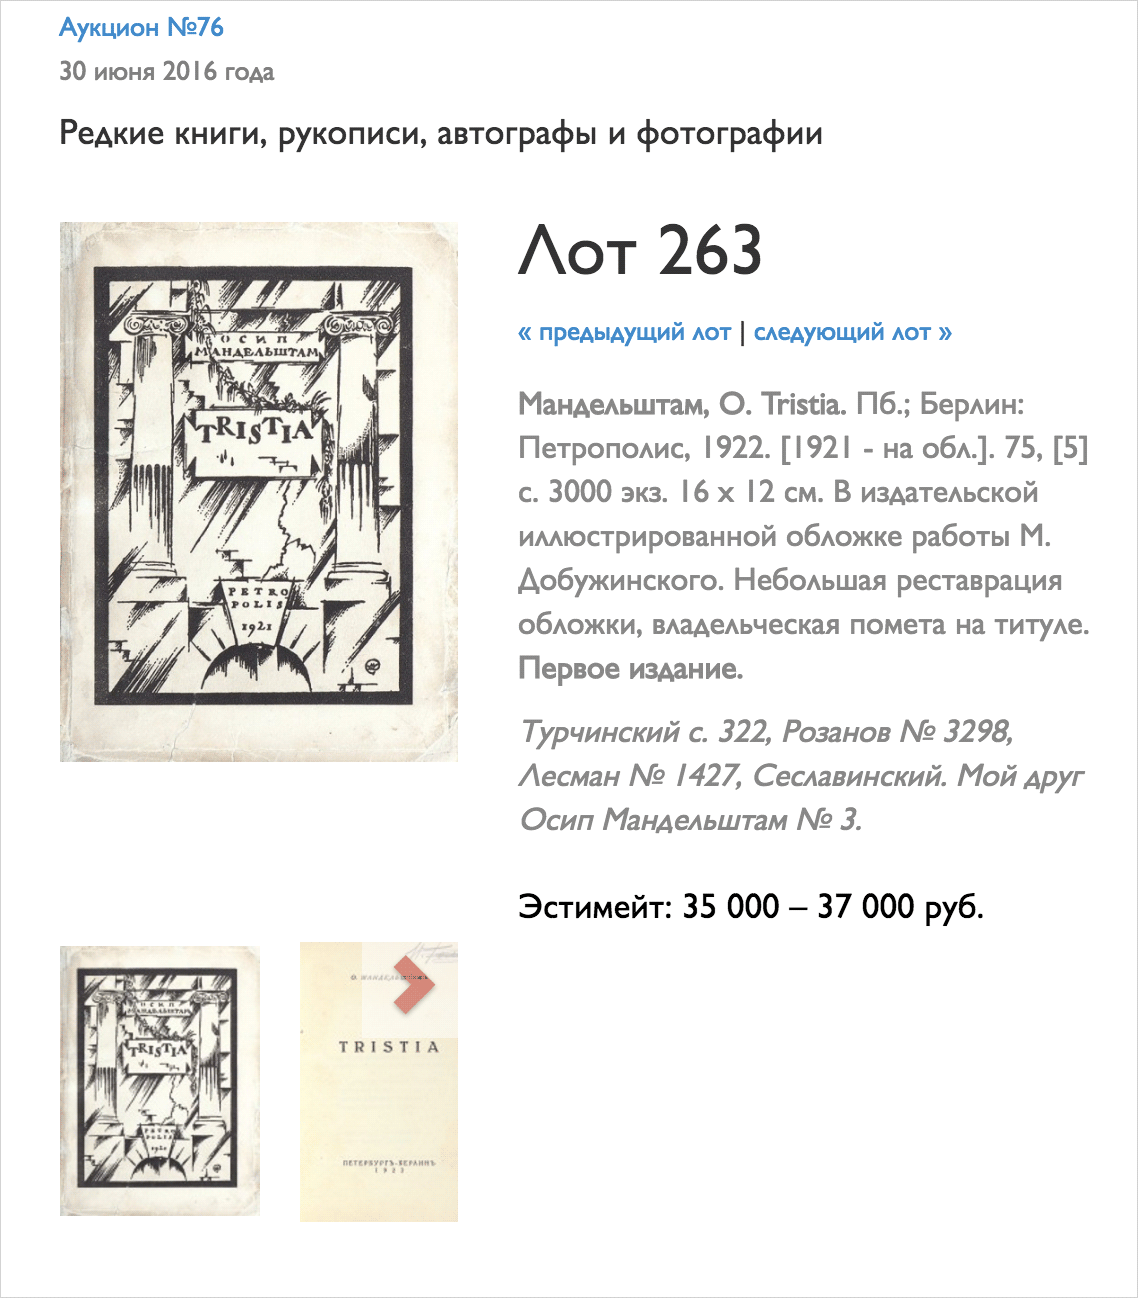 Первые издания ищите в букинистических магазинах или в «Доме антикварной книги» на Никитском